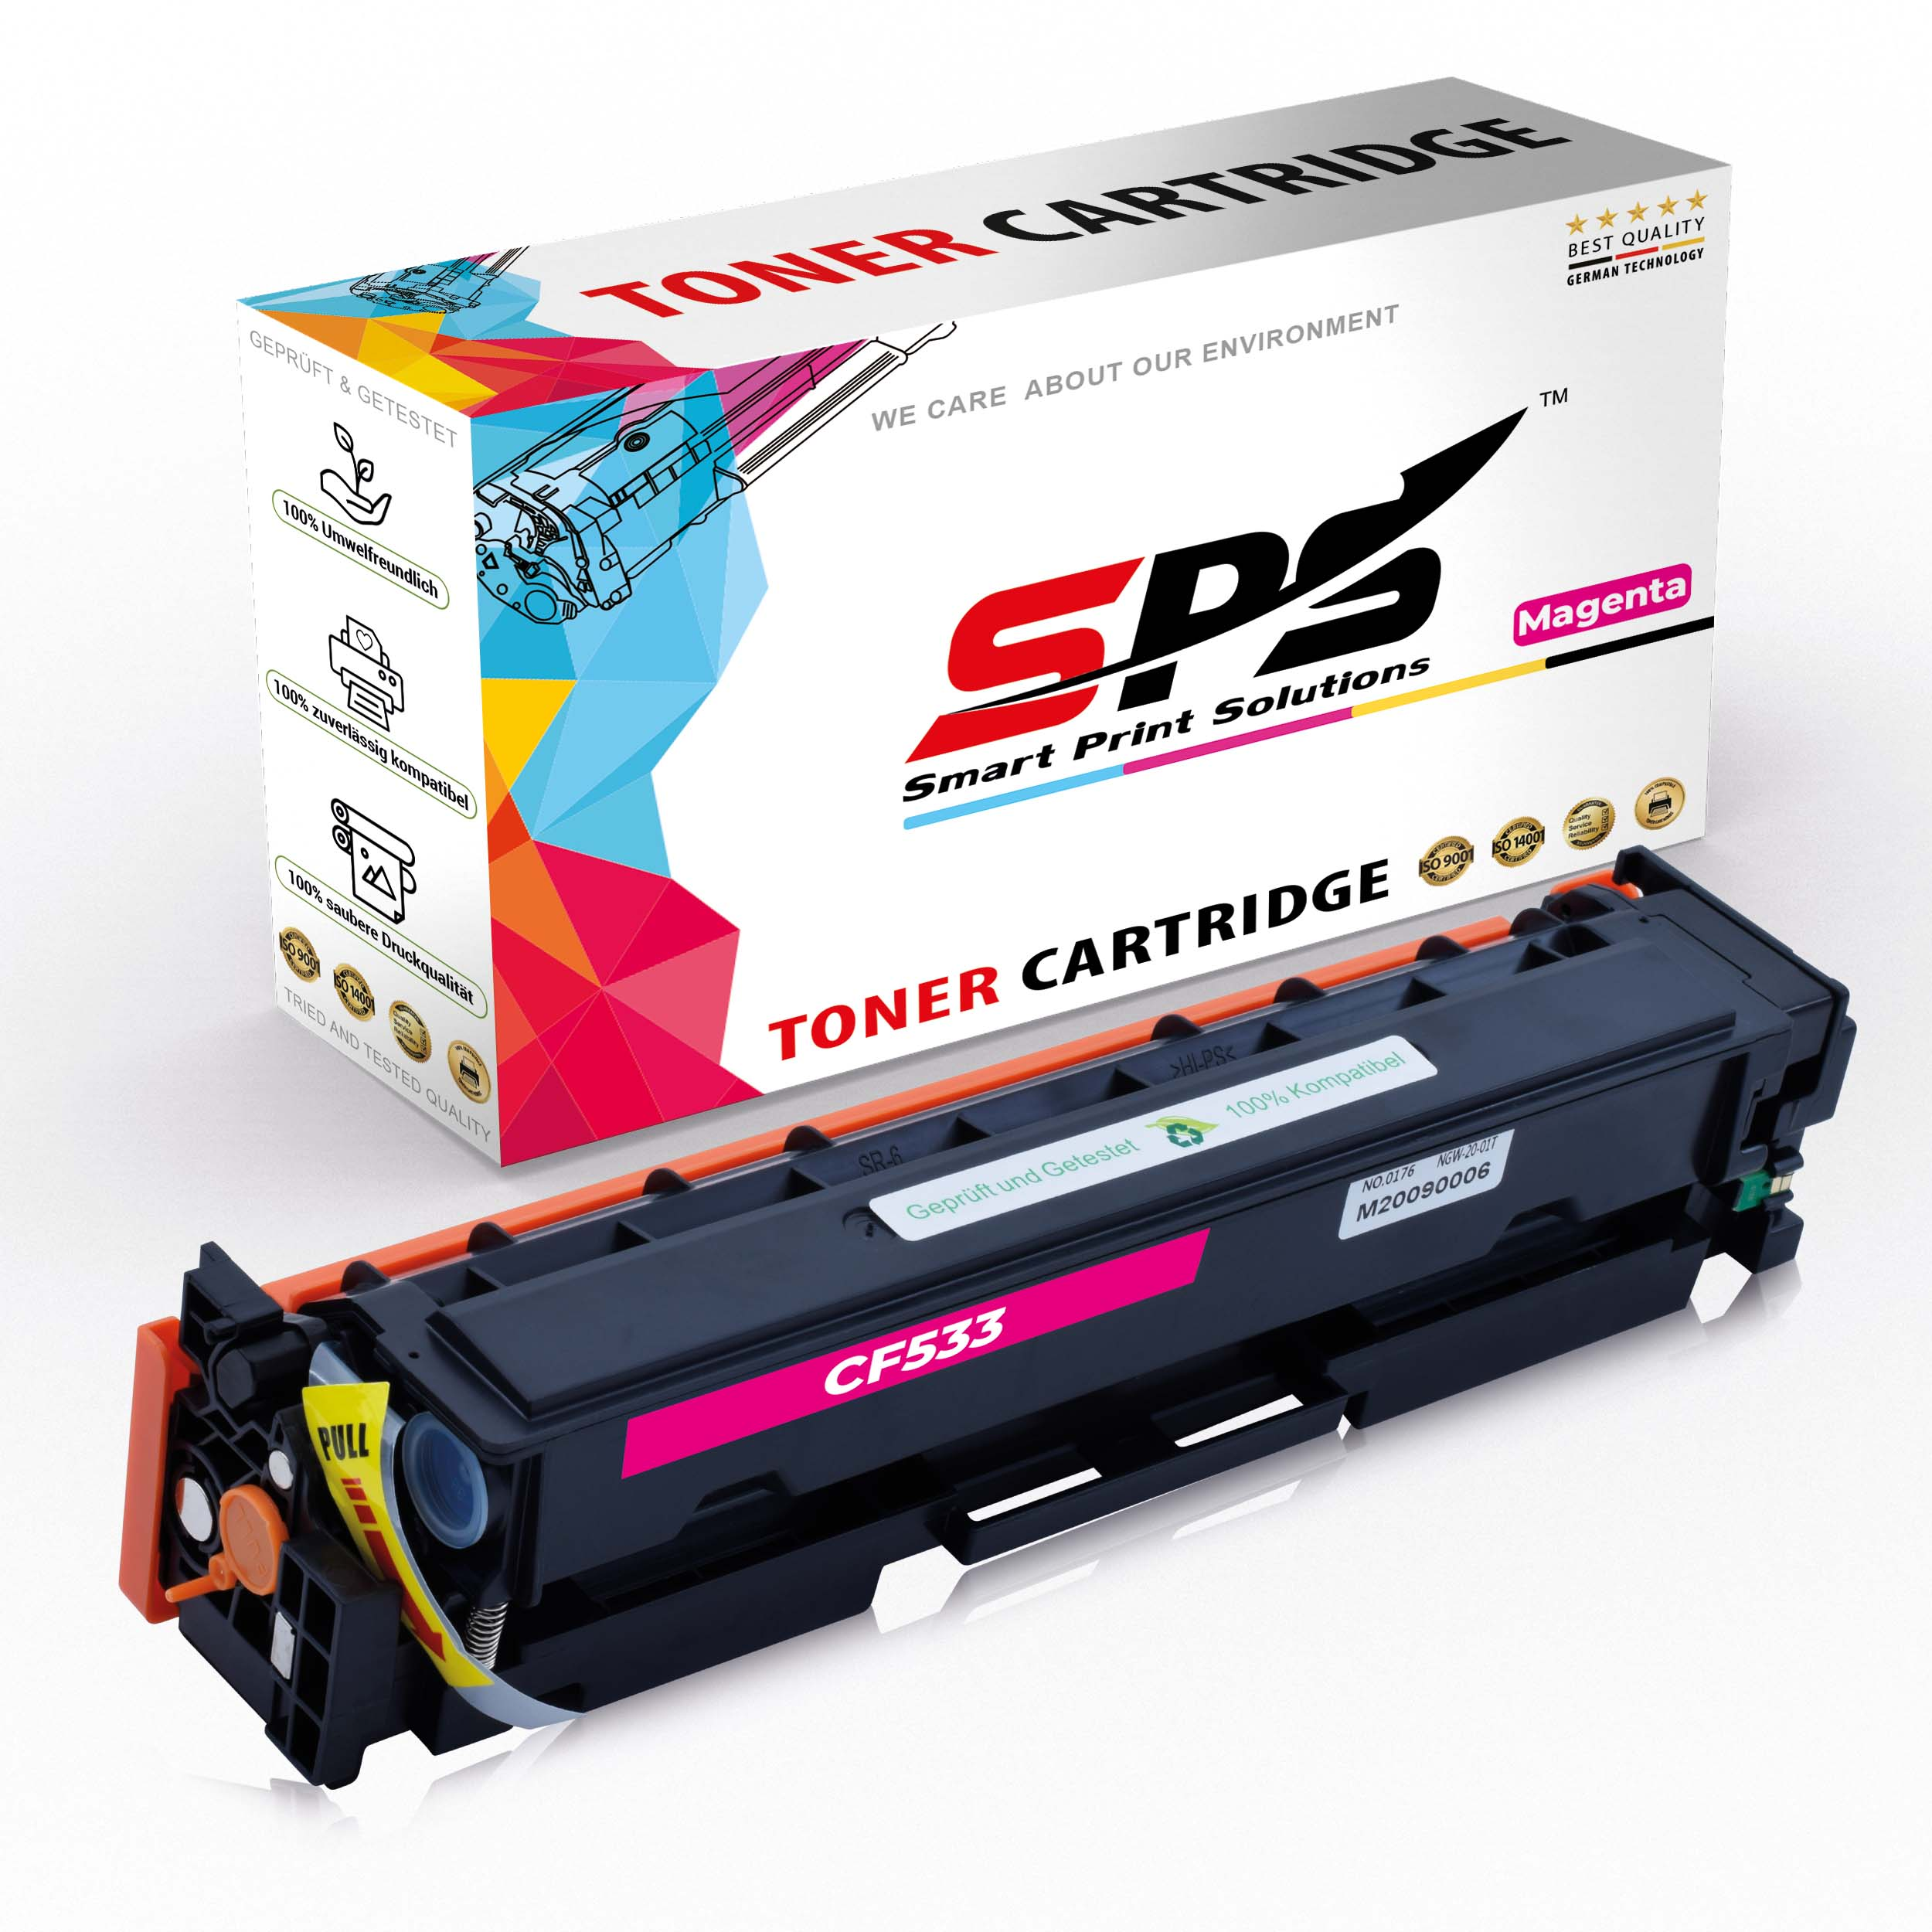 SPS S-22407 Magenta 205A) / (CF533A Toner